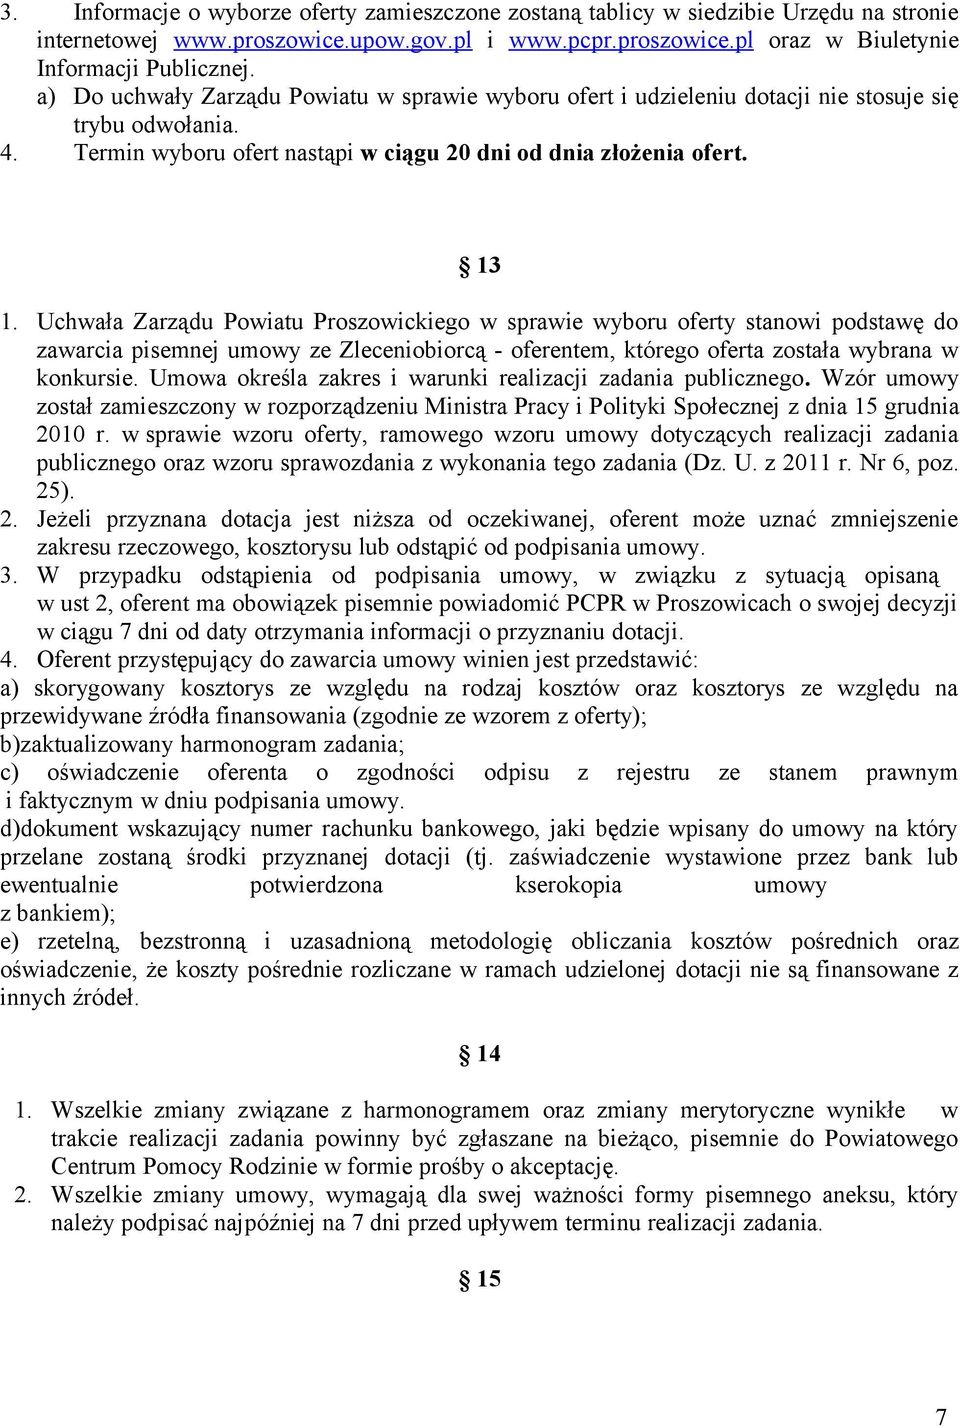 Uchwała Zarządu Powiatu Proszowickiego w sprawie wyboru oferty stanowi podstawę do zawarcia pisemnej umowy ze Zleceniobiorcą - oferentem, którego oferta została wybrana w konkursie.